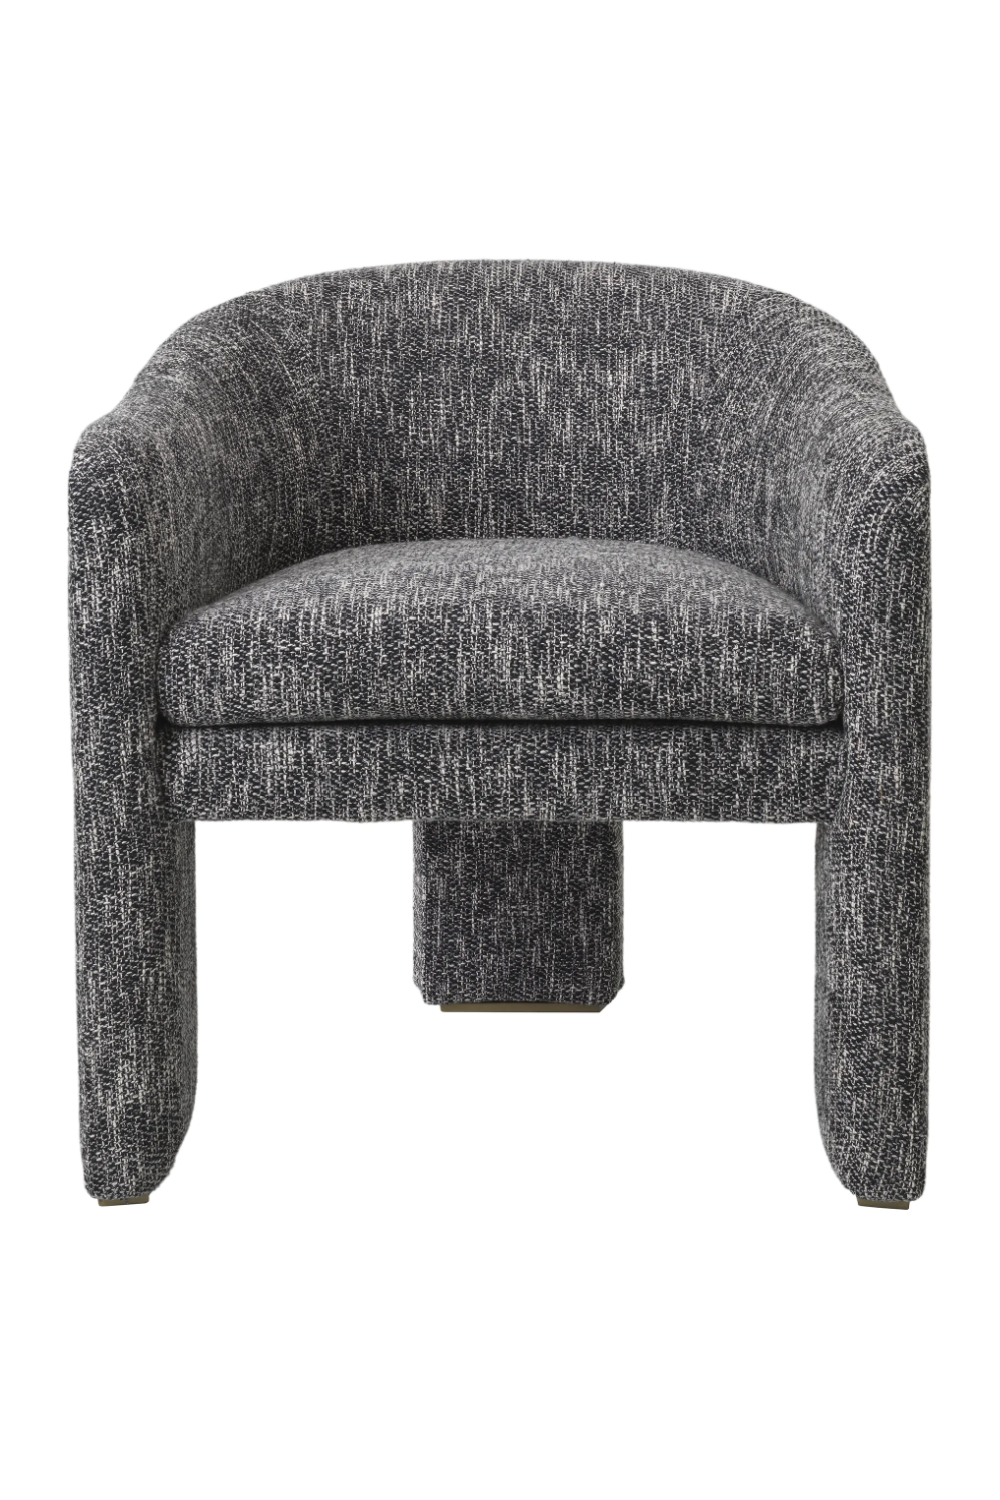 Black Modern Accent Tub Chair | Eichholtz Pebbles | Oroa.com